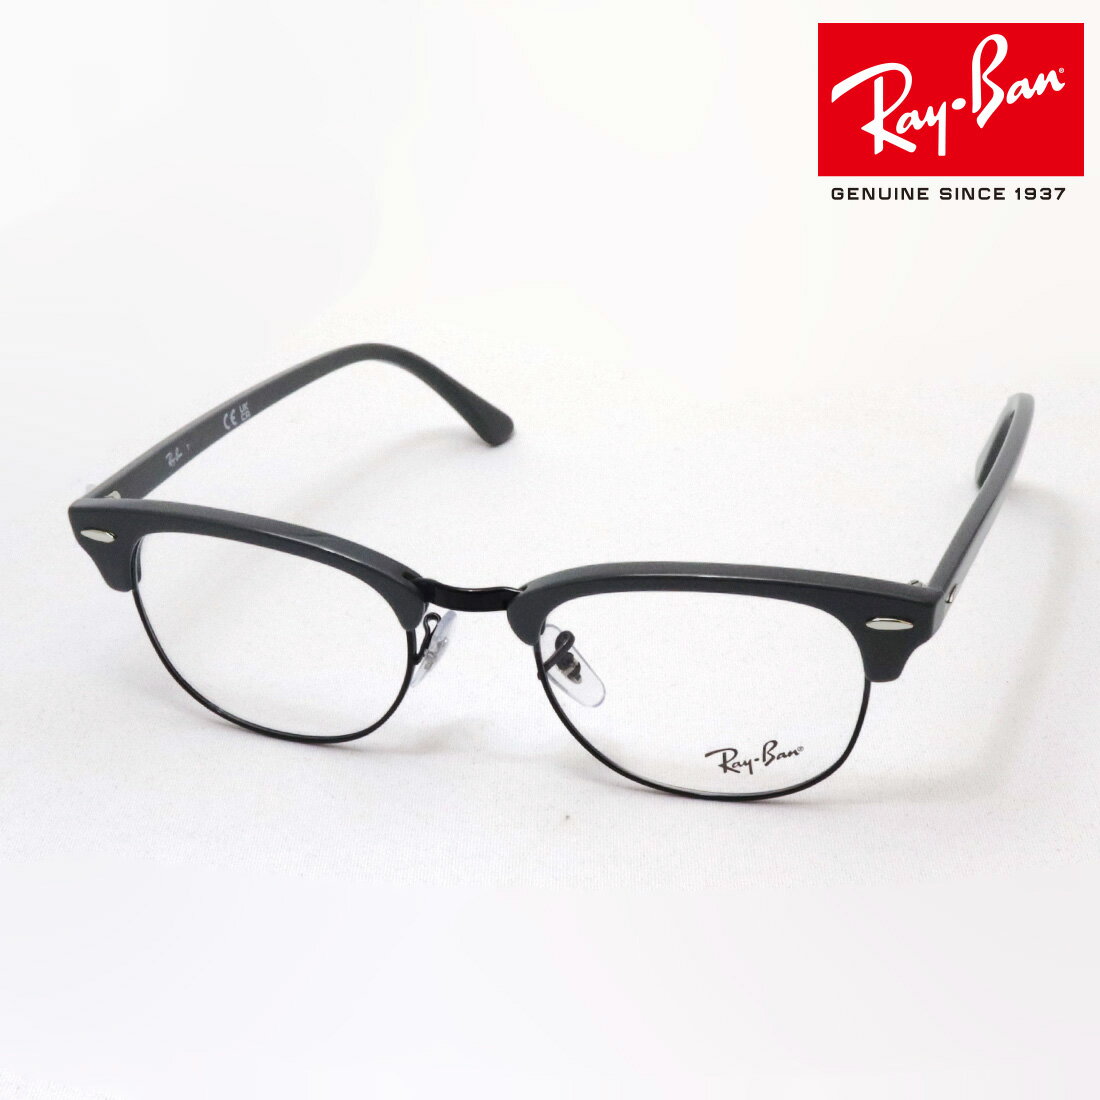 レイバン メガネ メンズ 正規レイバン日本最大級の品揃え レイバン メガネ フレーム クラブマスター Ray-Ban RX5154 8232 伊達メガネ 度付き ブルーライト カット 眼鏡 黒縁 RayBan ブロー グレー系 ブラック系